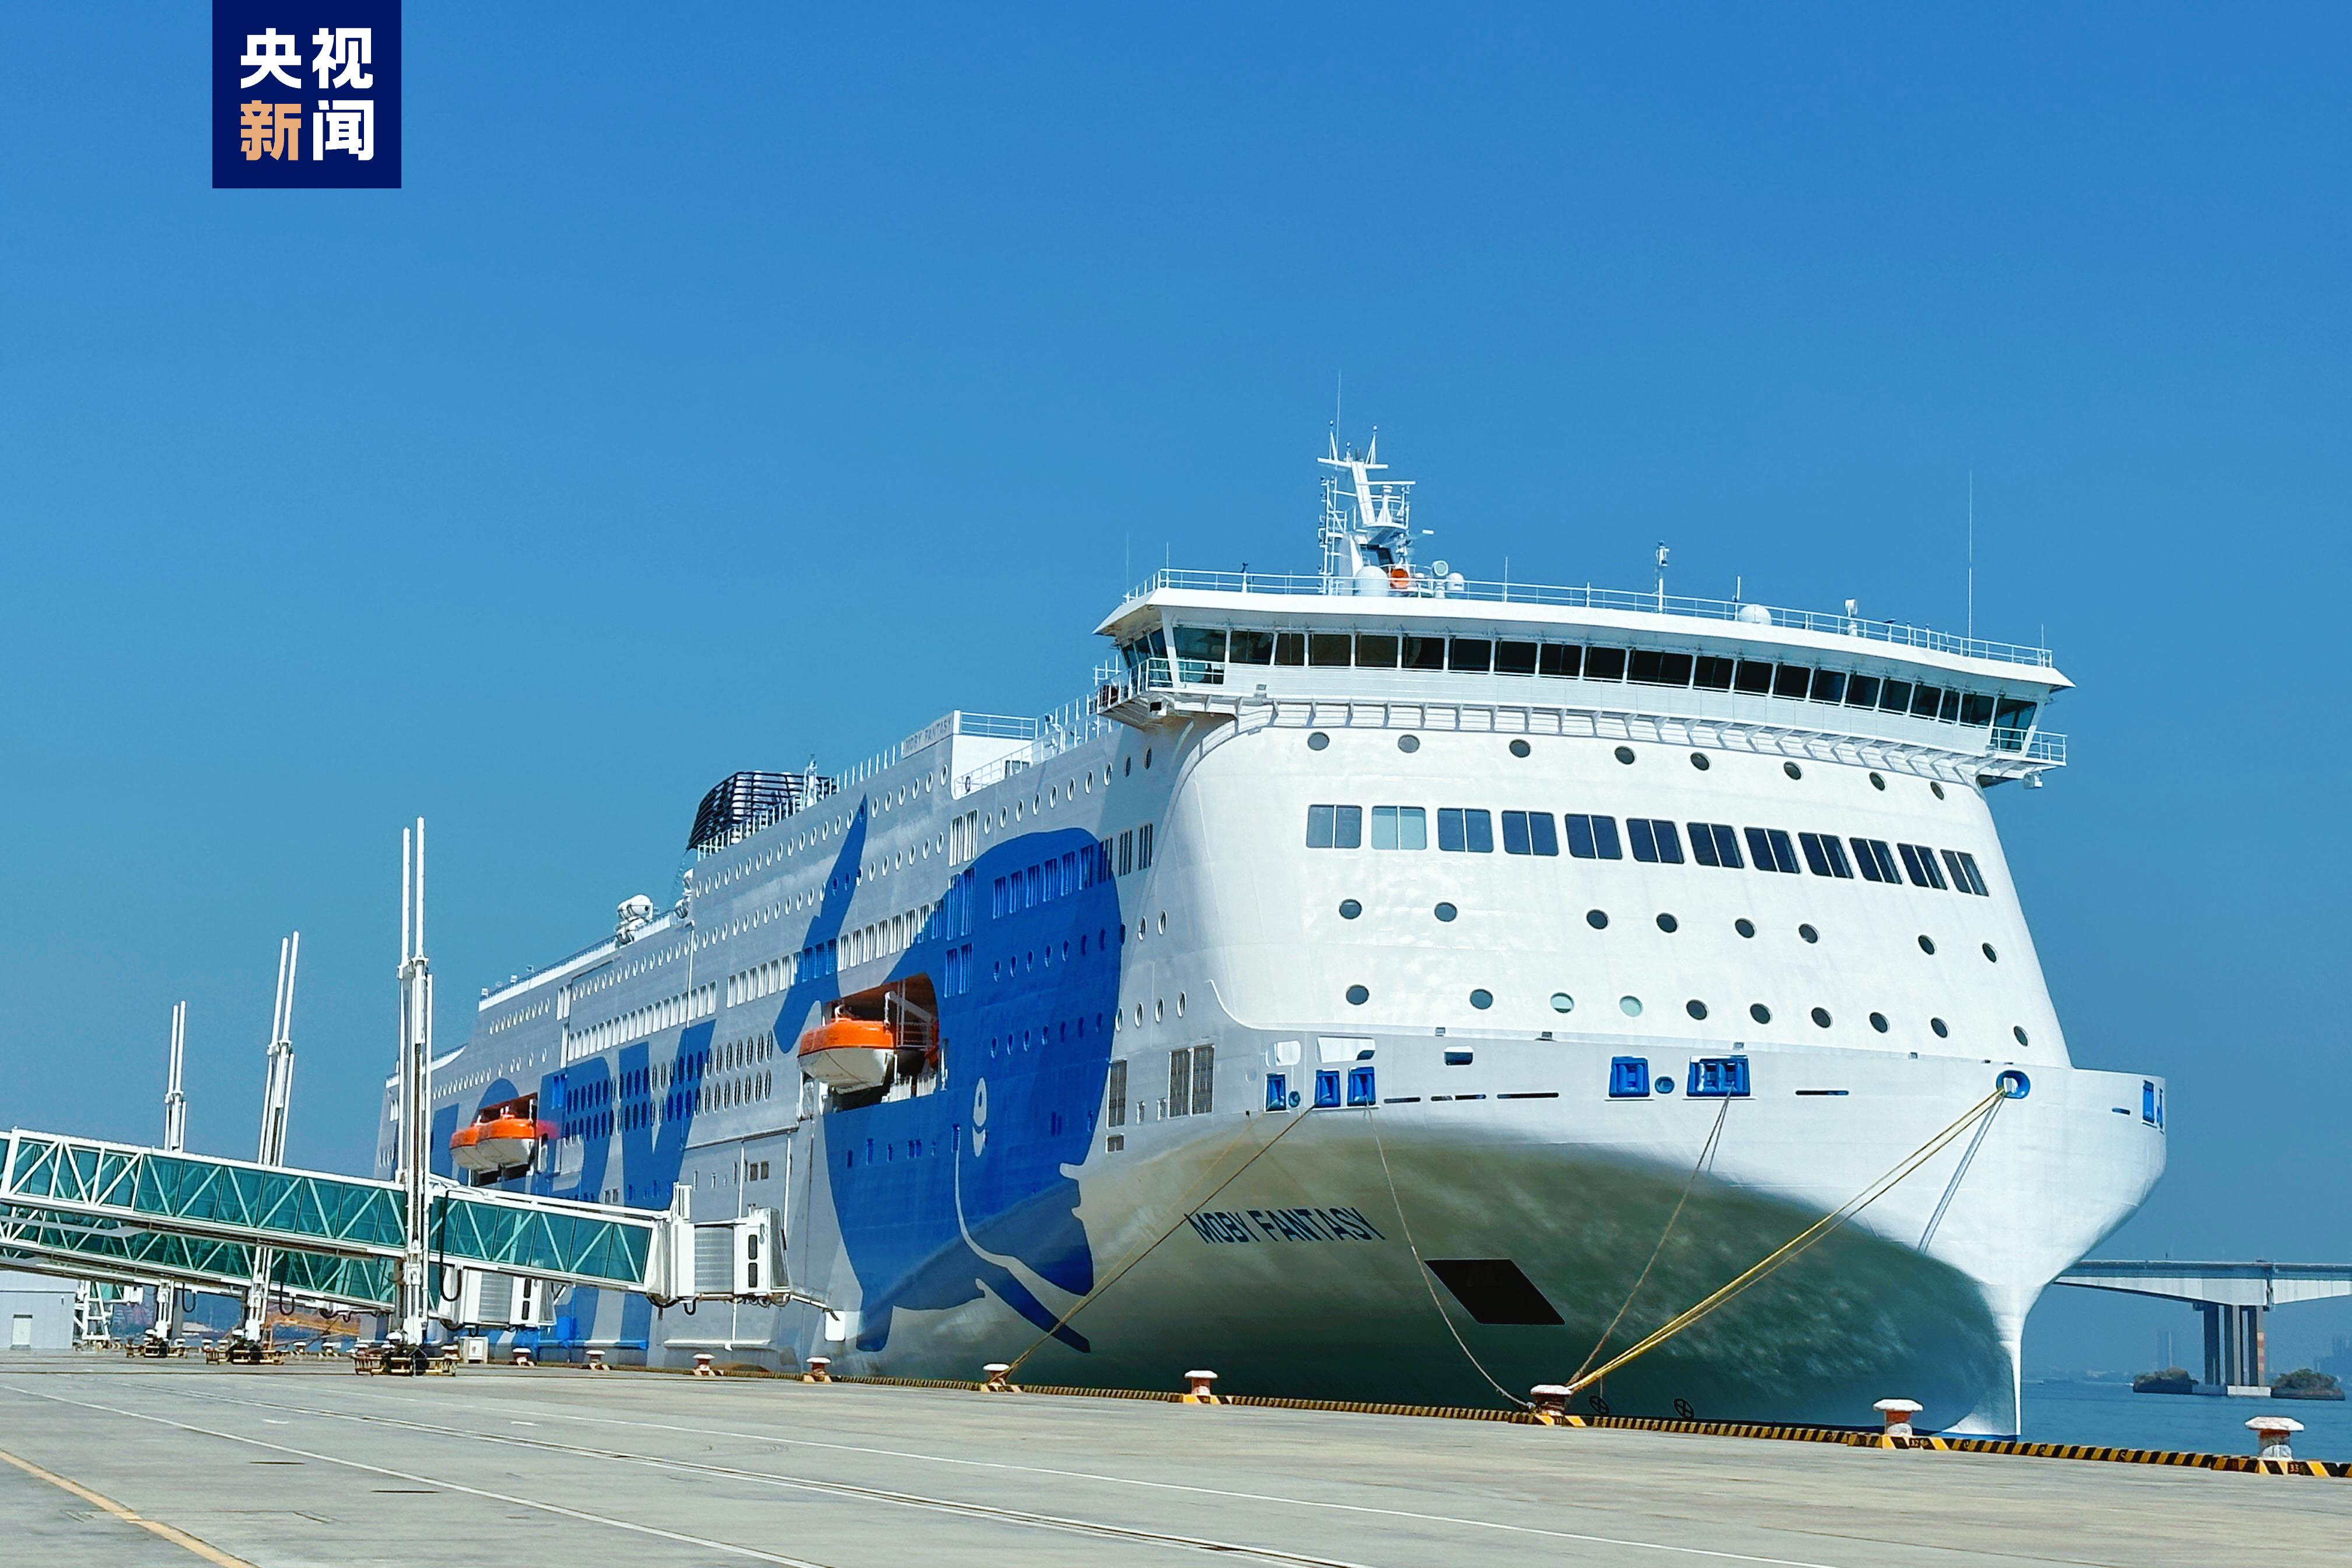 全球最大吨位豪华客滚船在广州启航内装材料实现100国产化